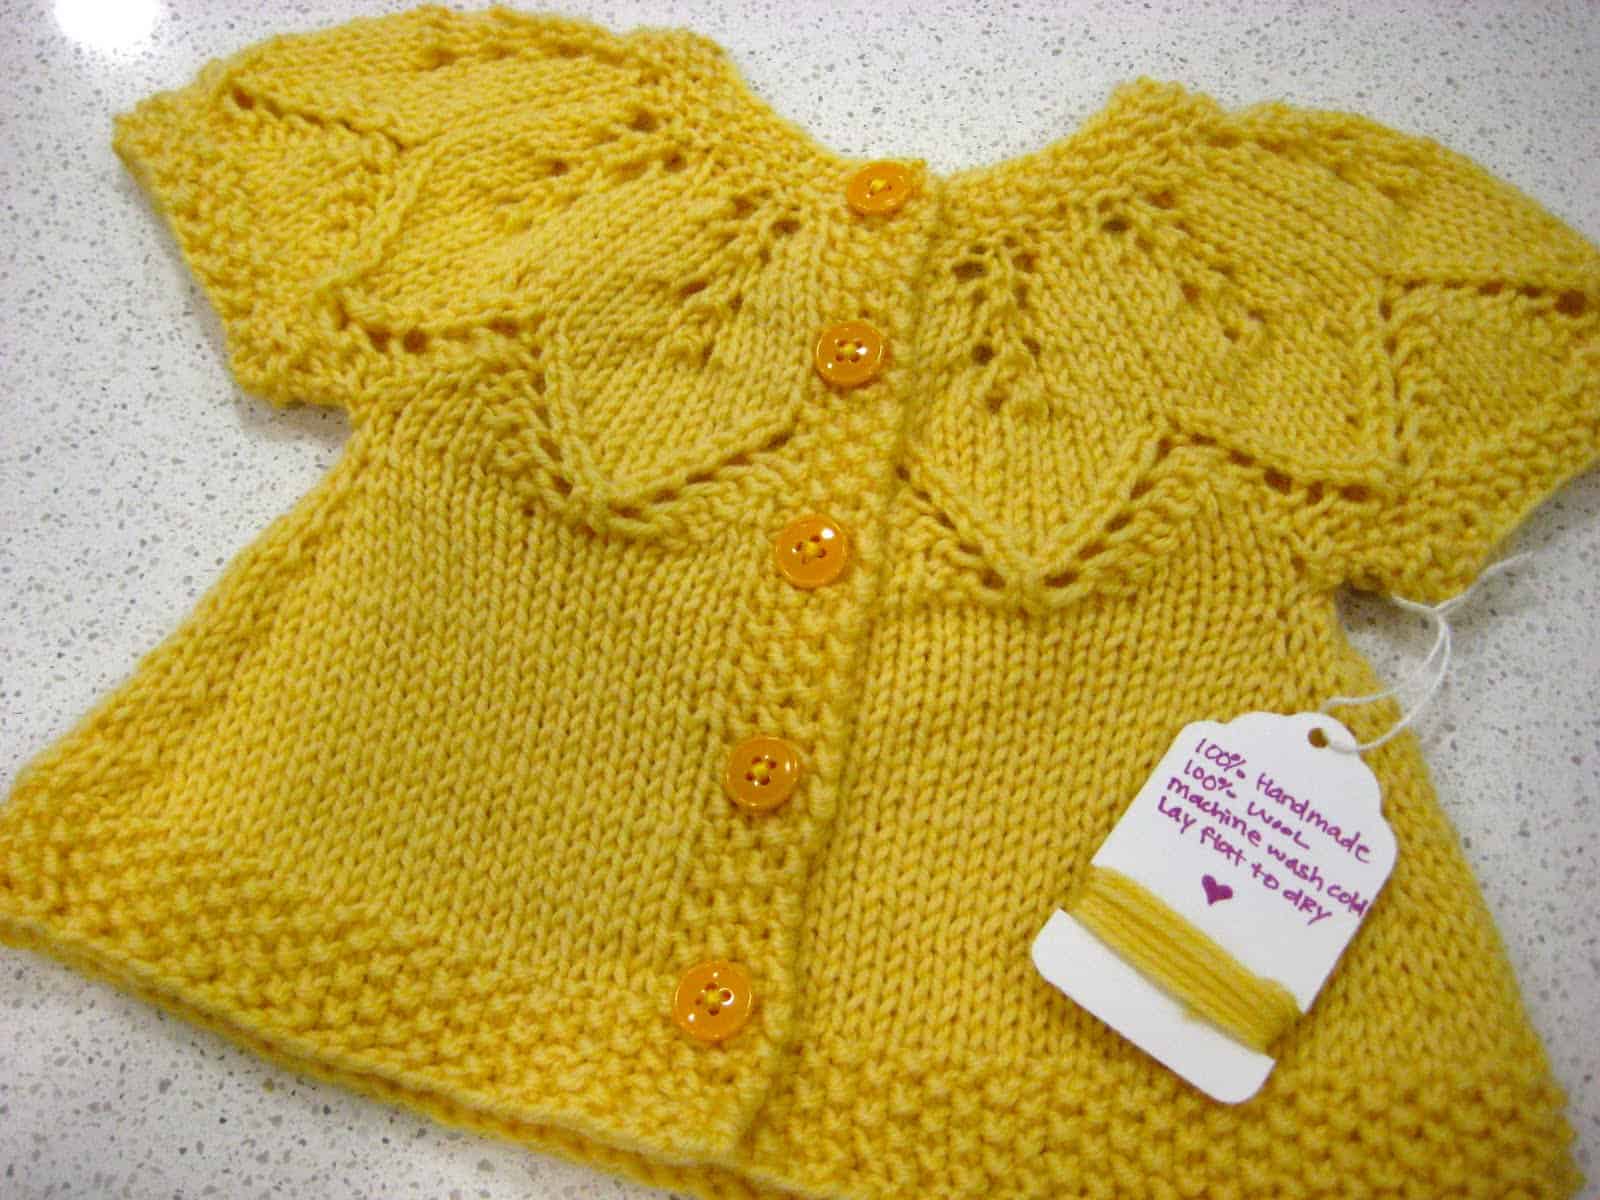 Lace yoke and seed stitch border girls' sweater